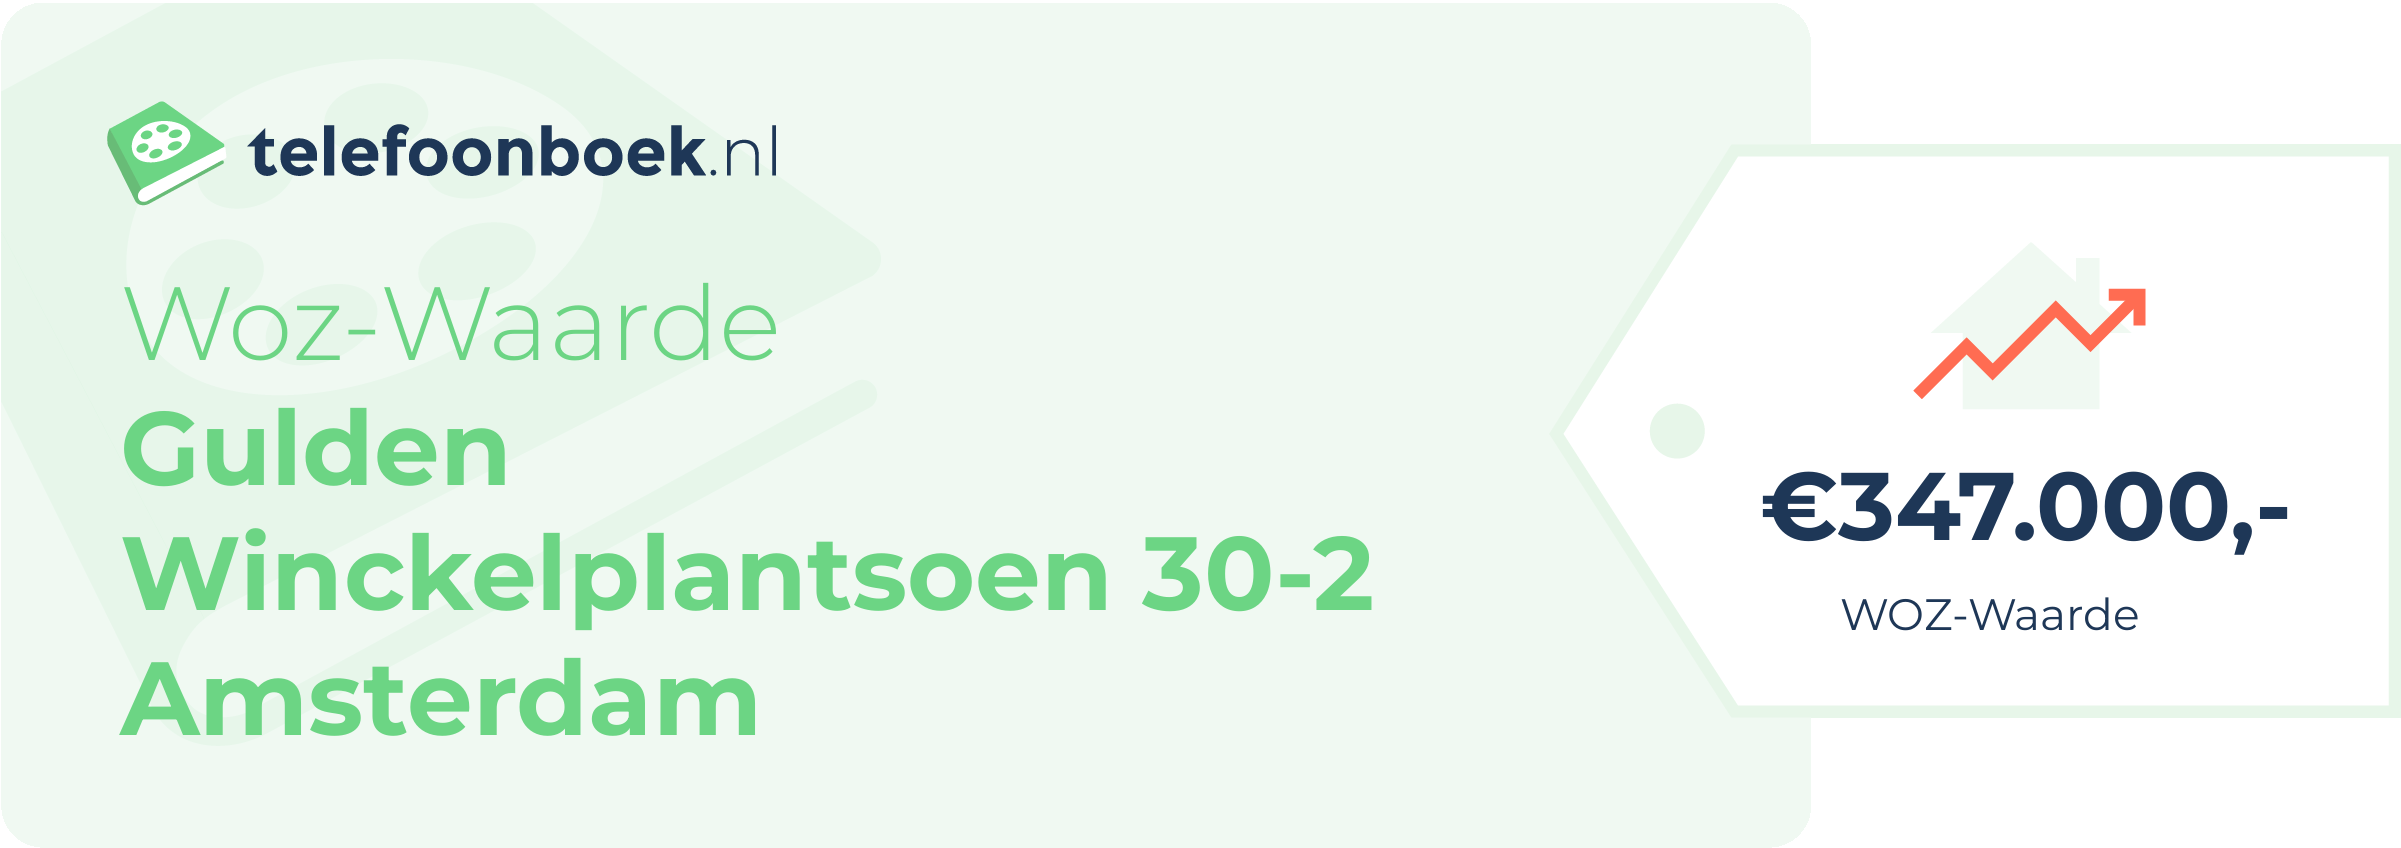 WOZ-waarde Gulden Winckelplantsoen 30-2 Amsterdam